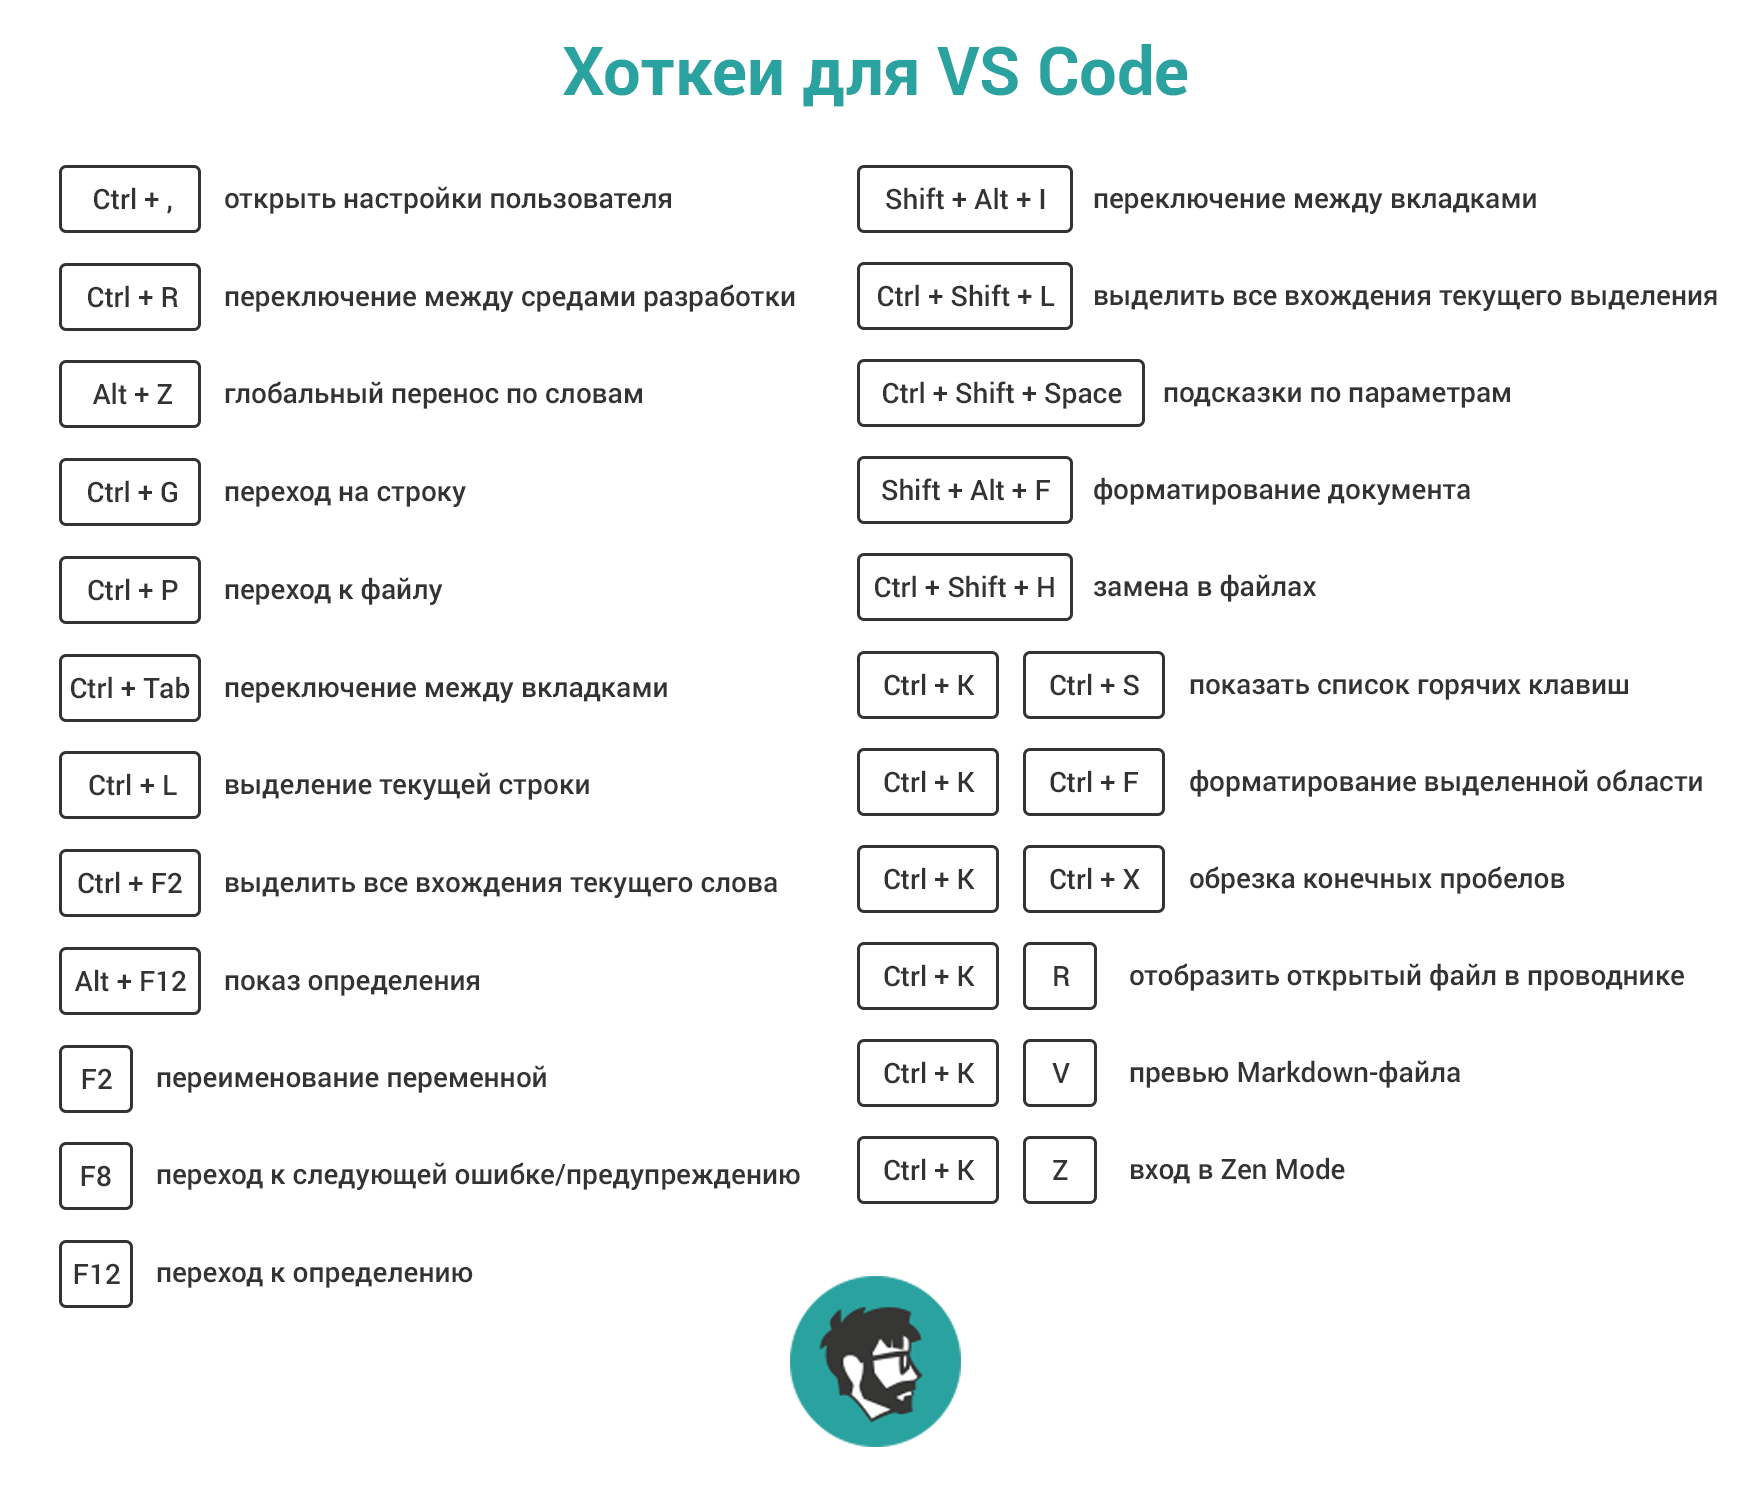 Vs code shortcuts. Горячие клавиши vs code. Горячая клавиша vs code. Горячие клавиши Visual Studio code. Visual Studio code быстрые клавиши.